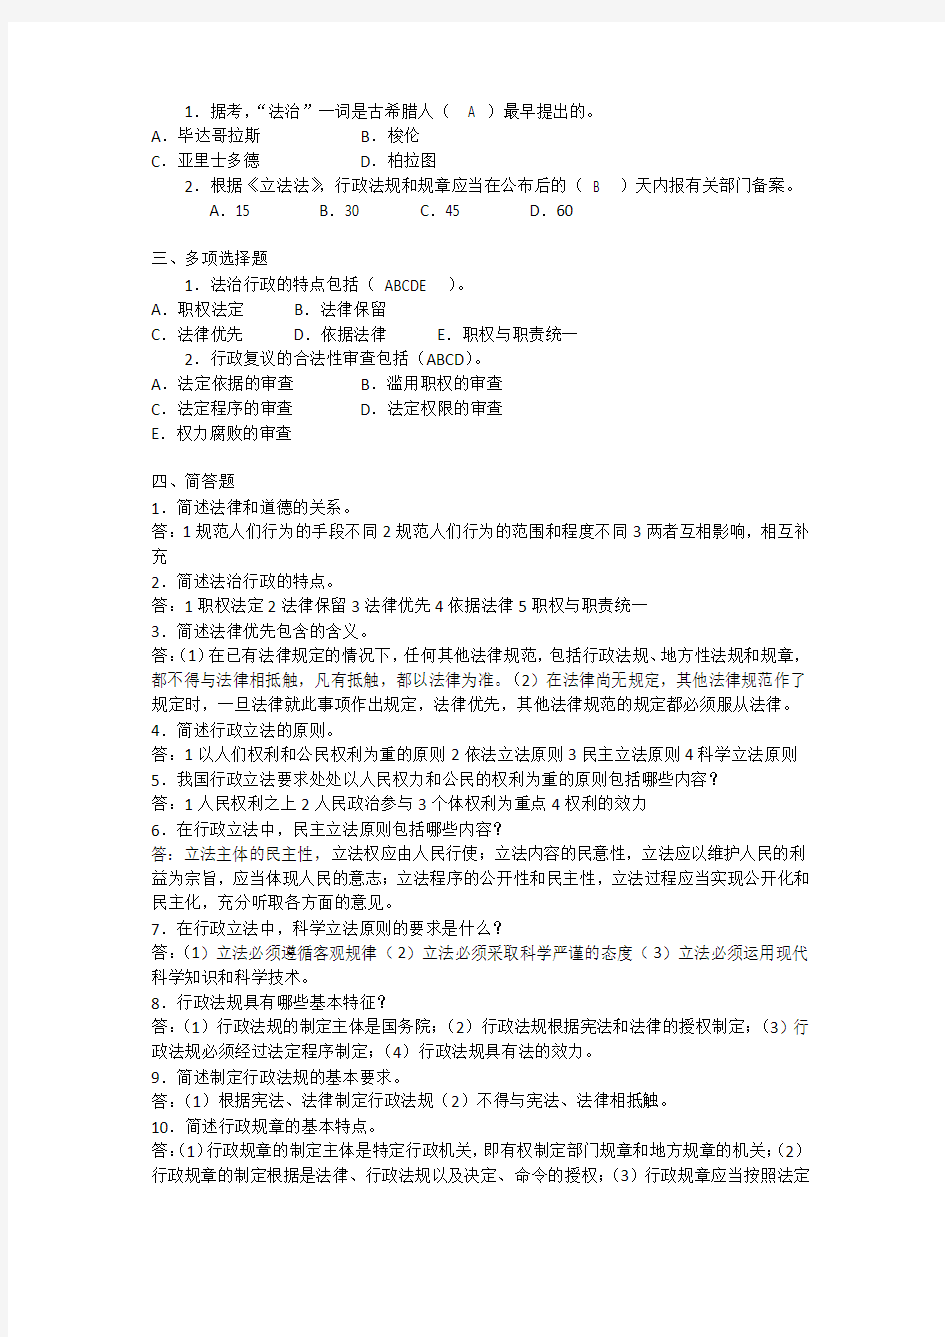 《公共行政学》综合练习(七)(第13—14章)2